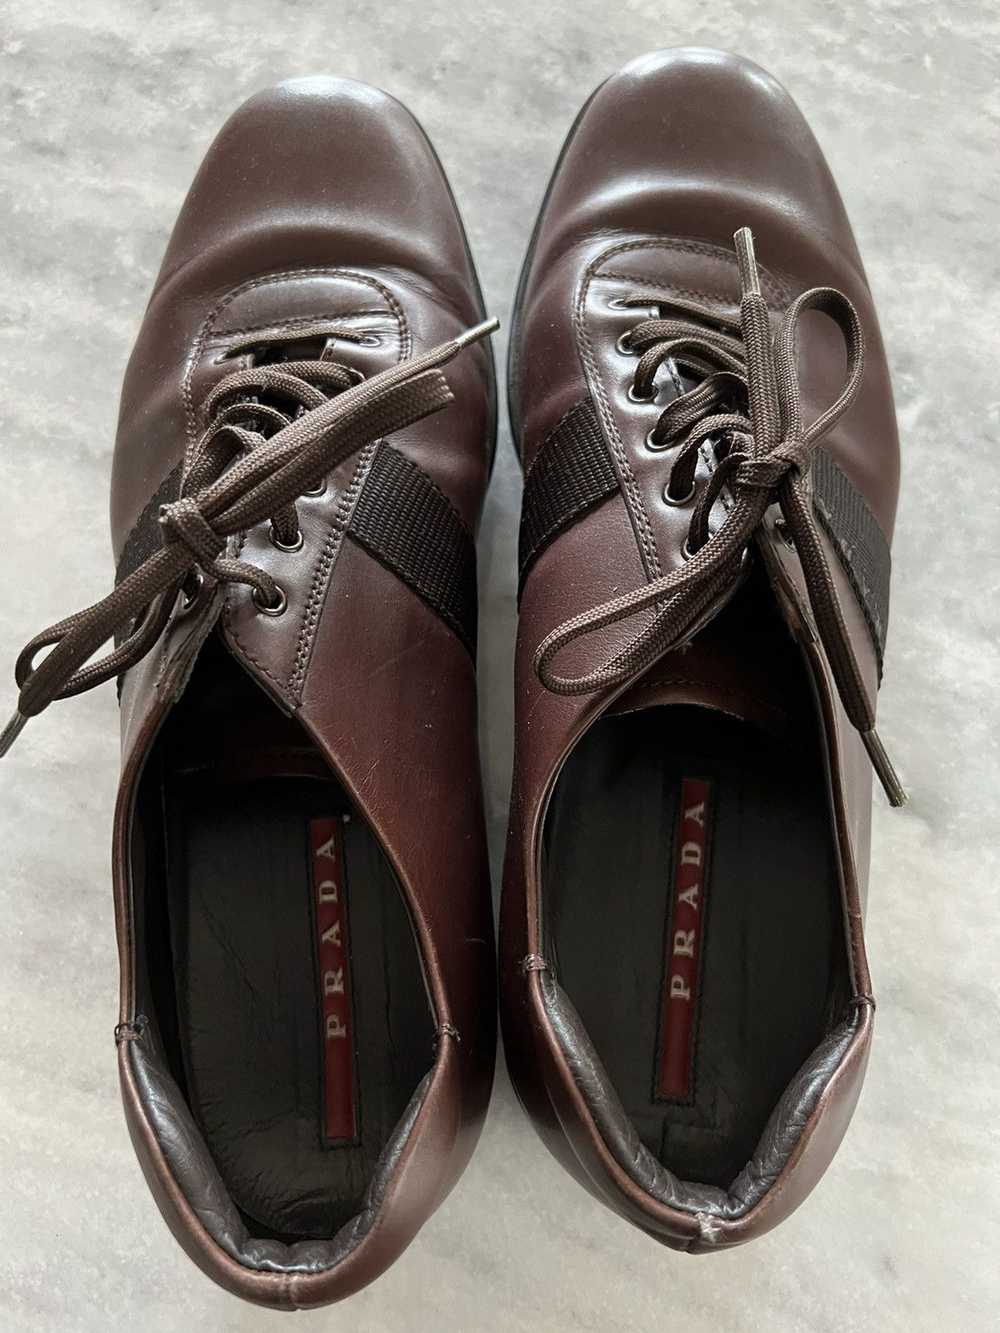 Prada Prada linea rossa brown leather shoes - image 1